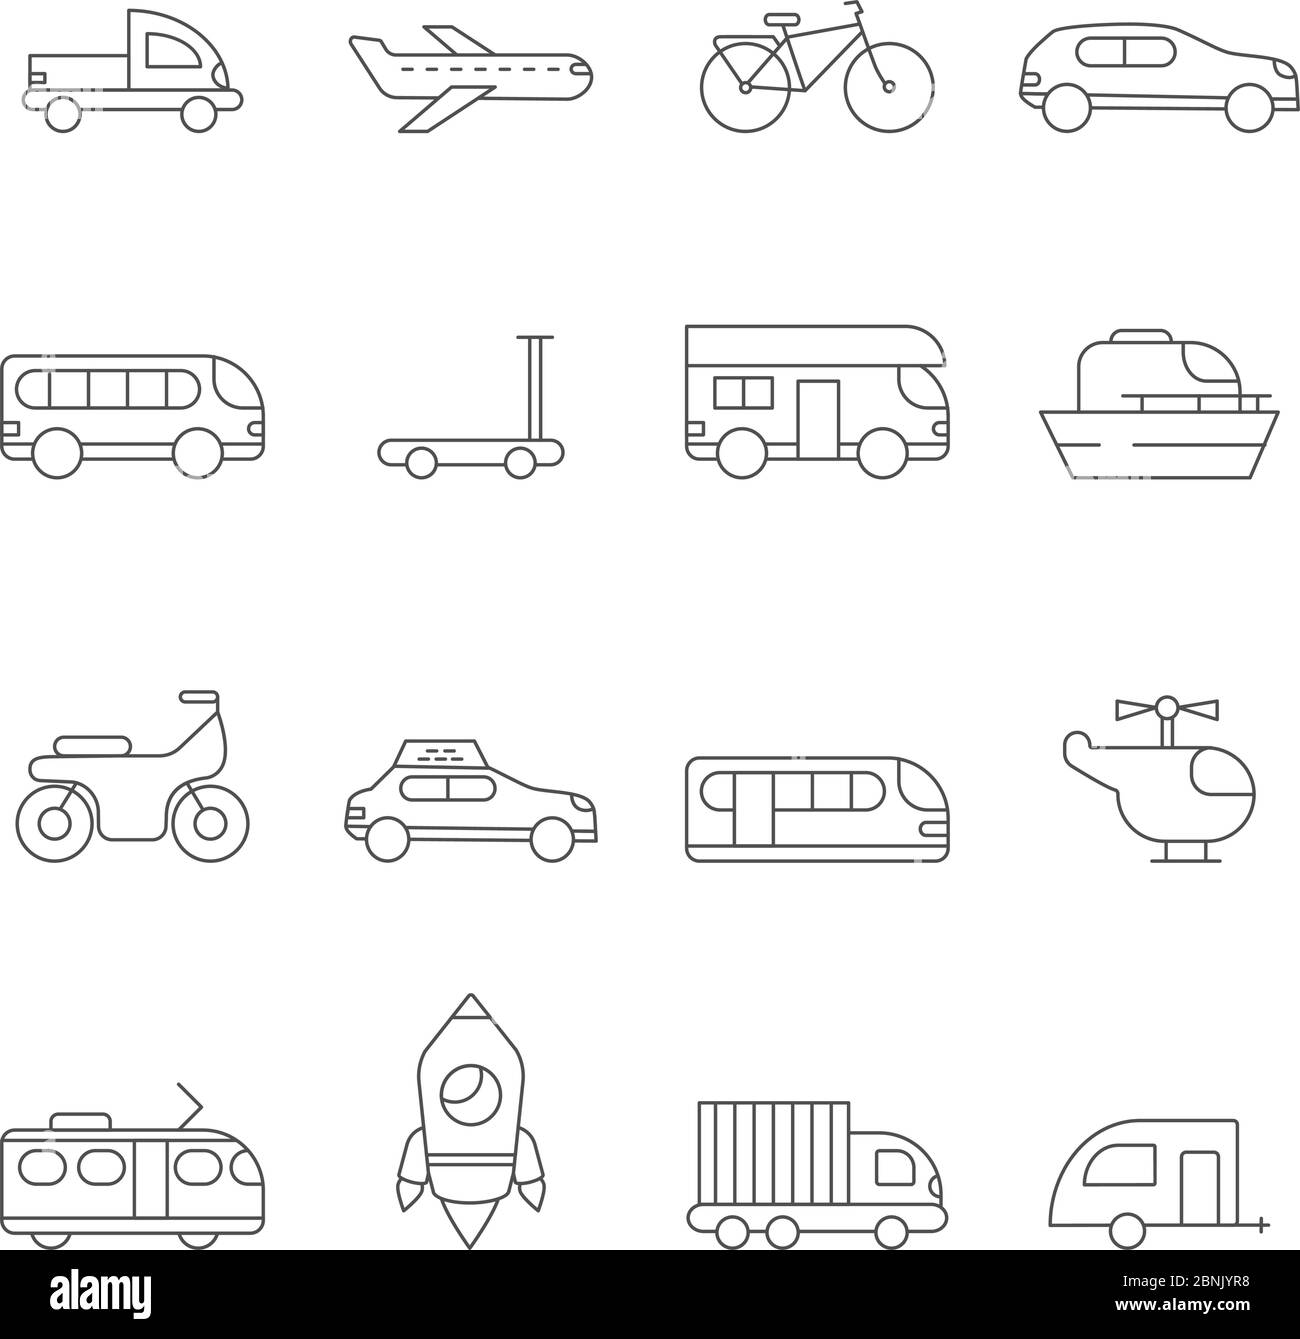 Transportation icon. Linear illustrations of various urban transport Stock Vector